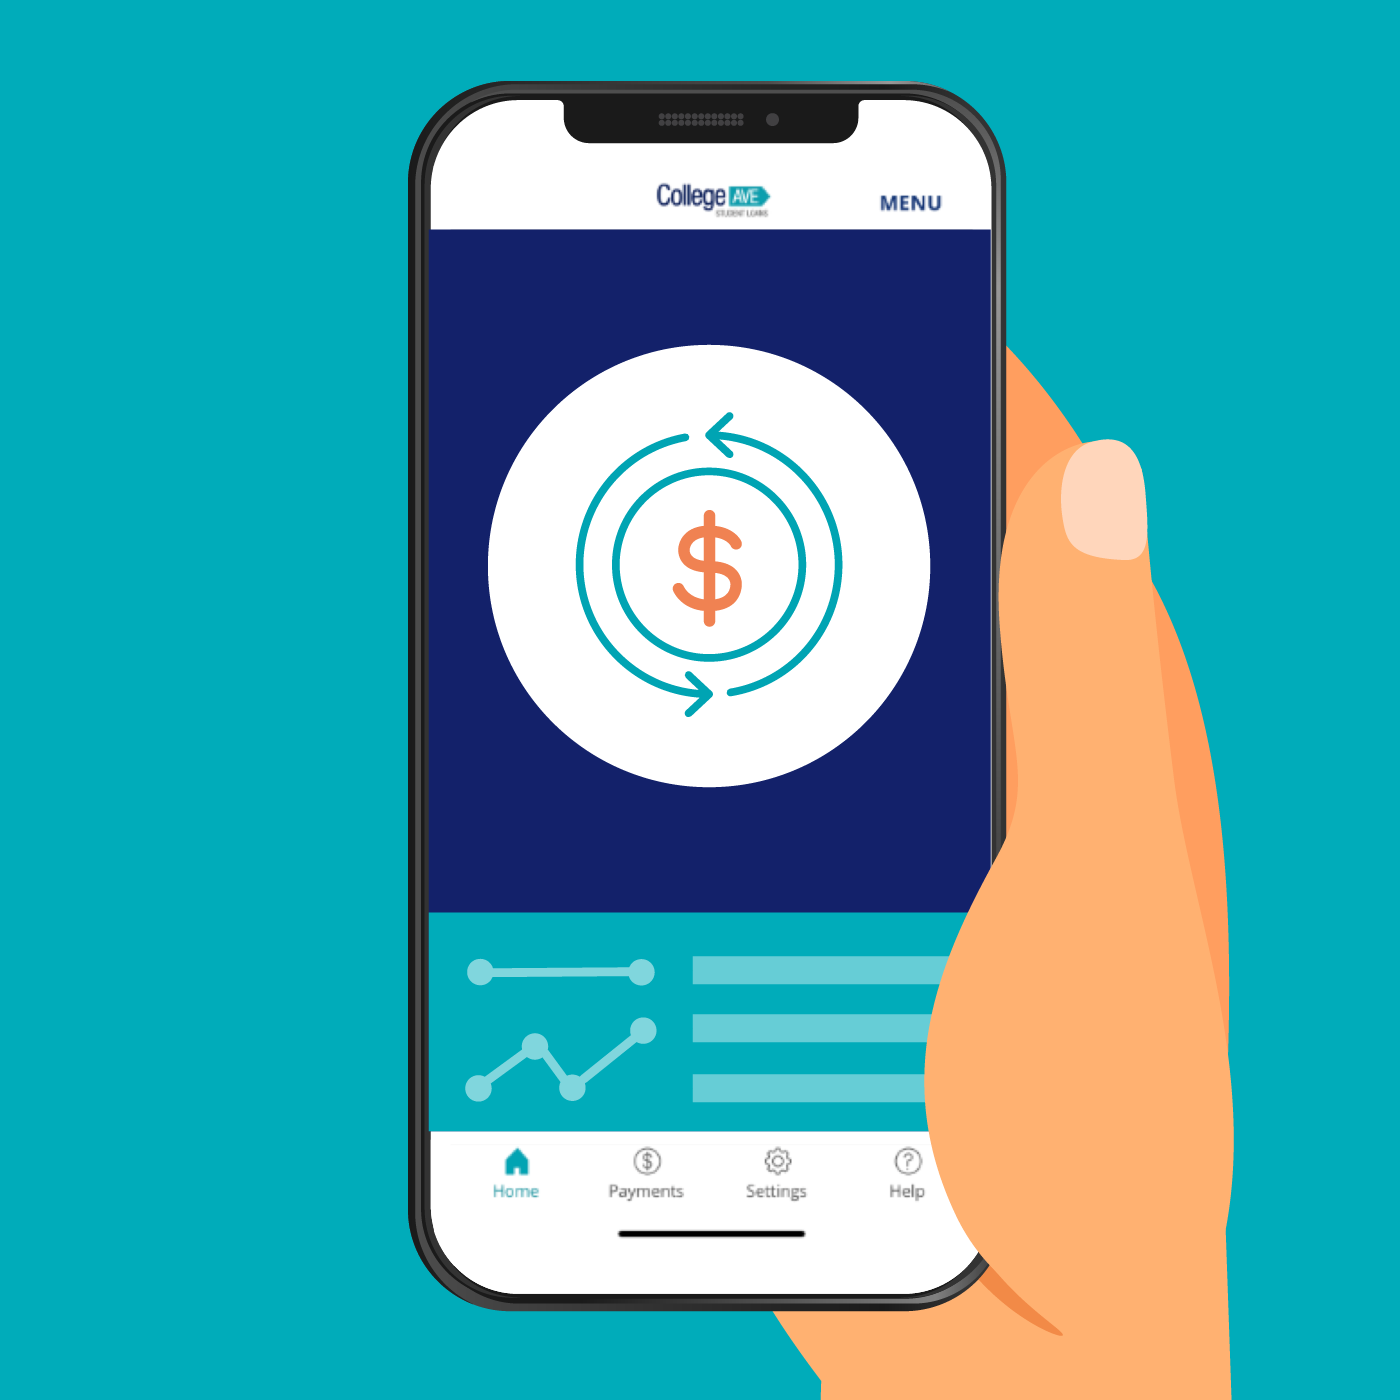  How to monetize a Mobile Aplicación?
 